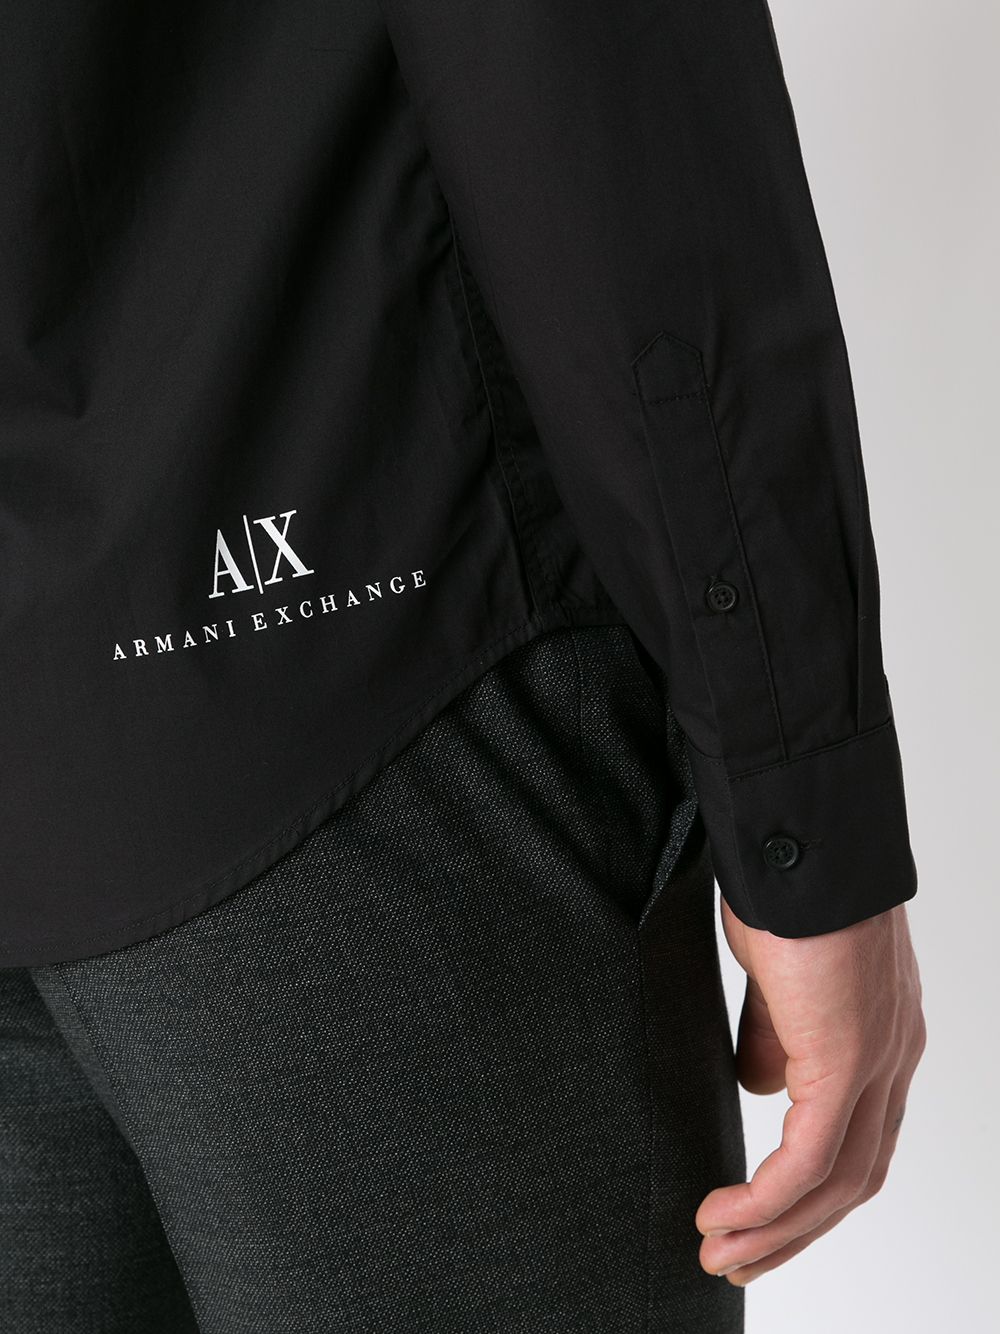 фото Armani exchange рубашка с логотипом